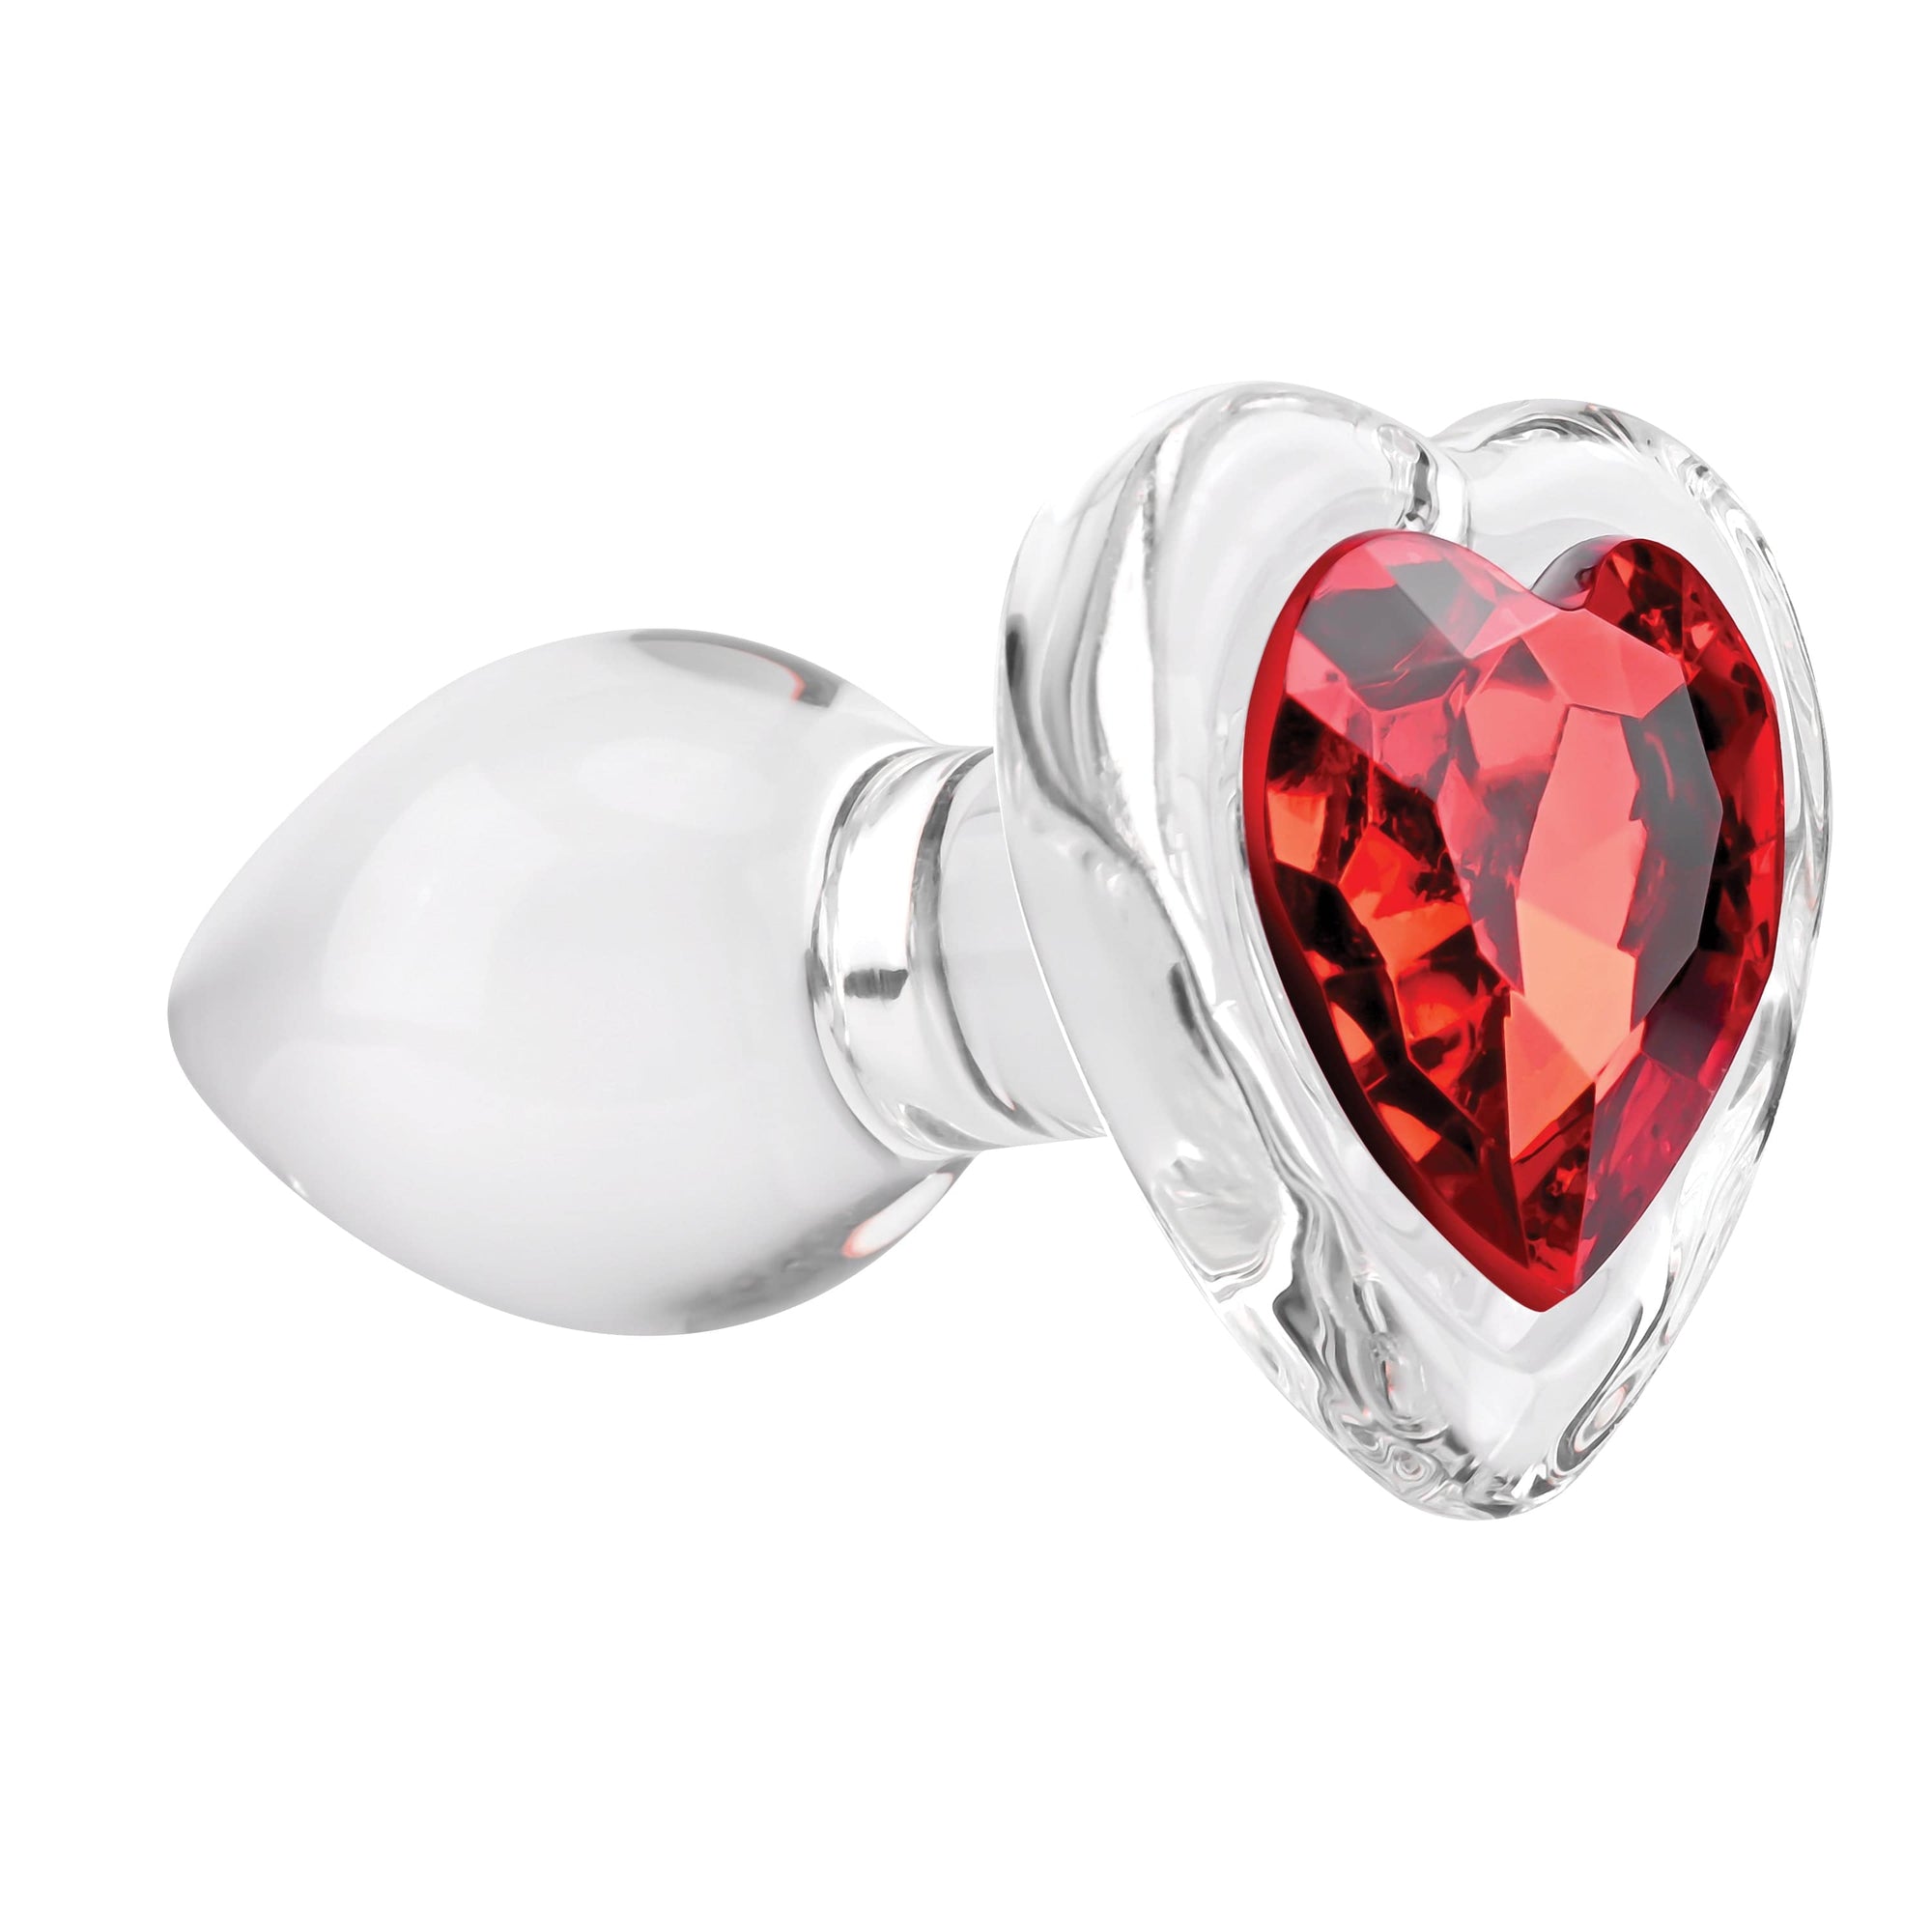 Adam & Eve - Red Heart Gem Glass Anal Plug -  Glass Anal Plug (Non Vibration)  Durio.sg